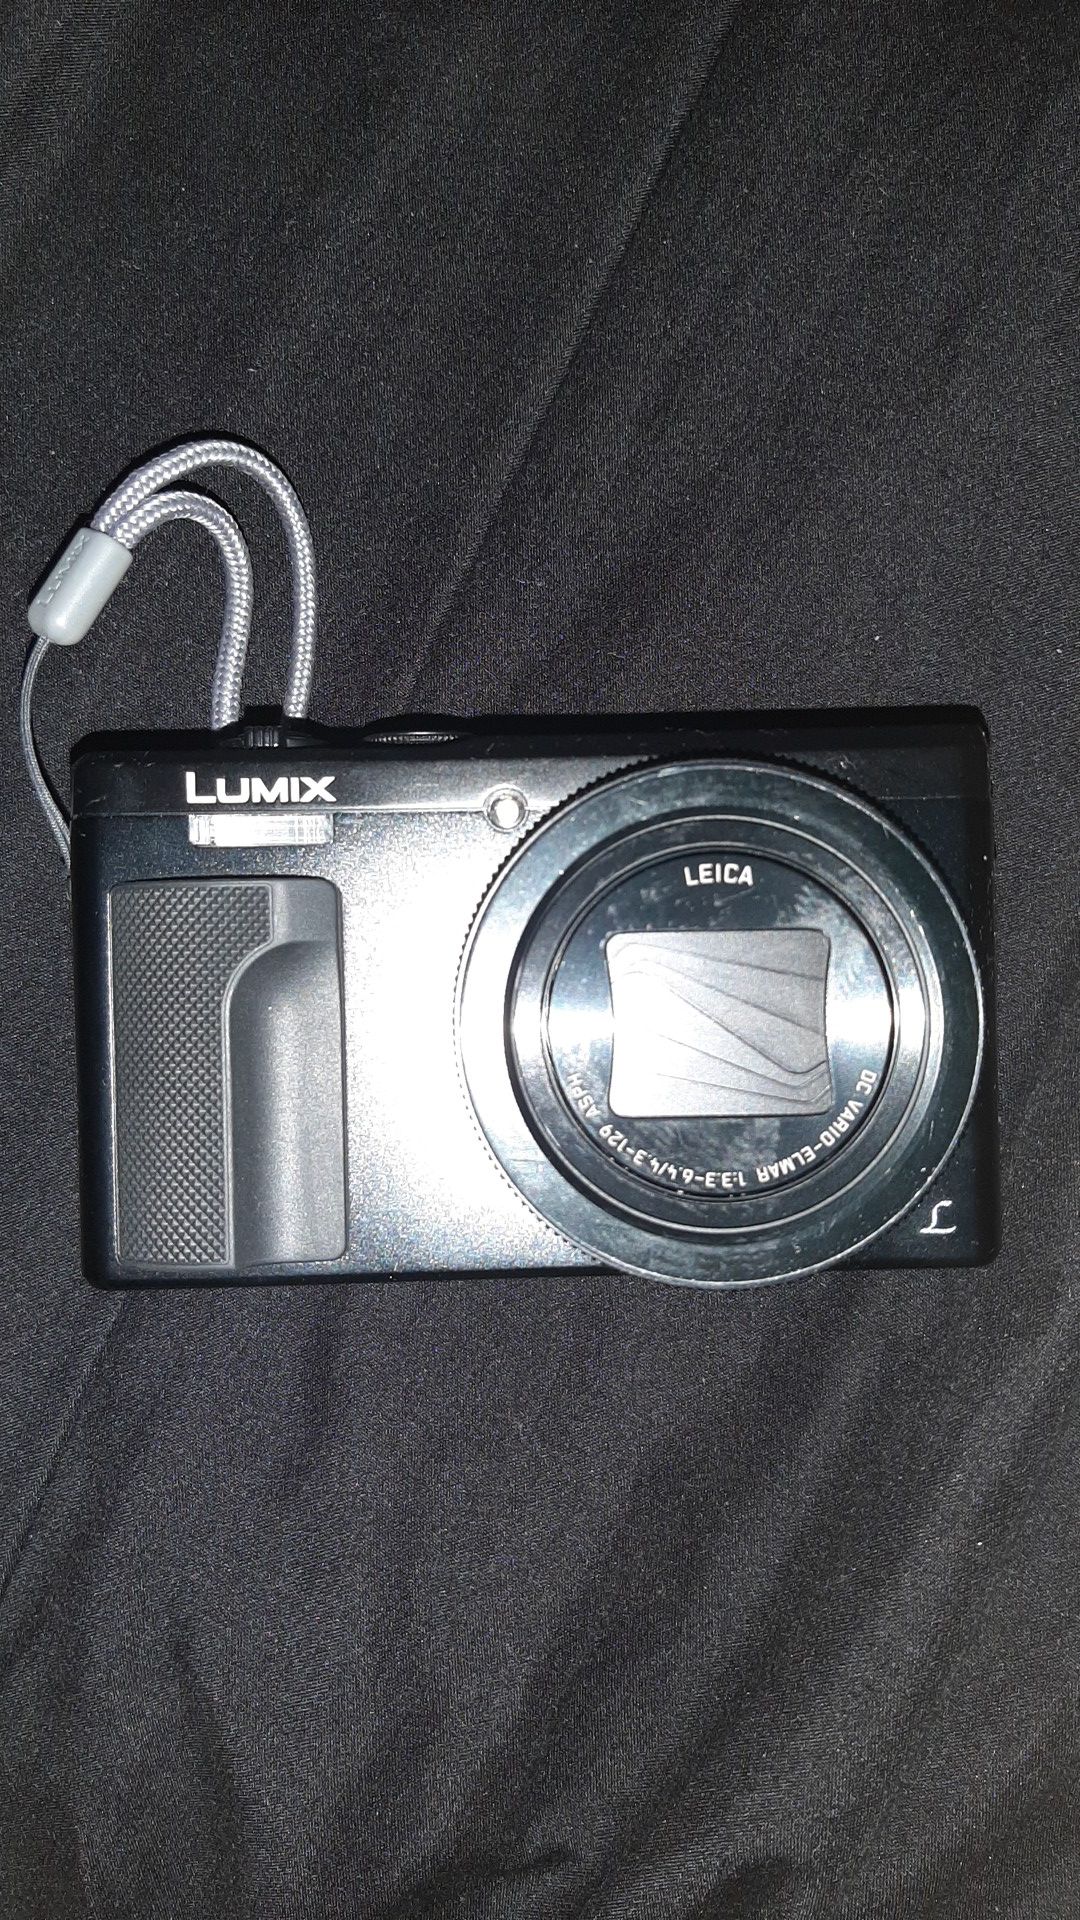 Panasonic Lumix zs60